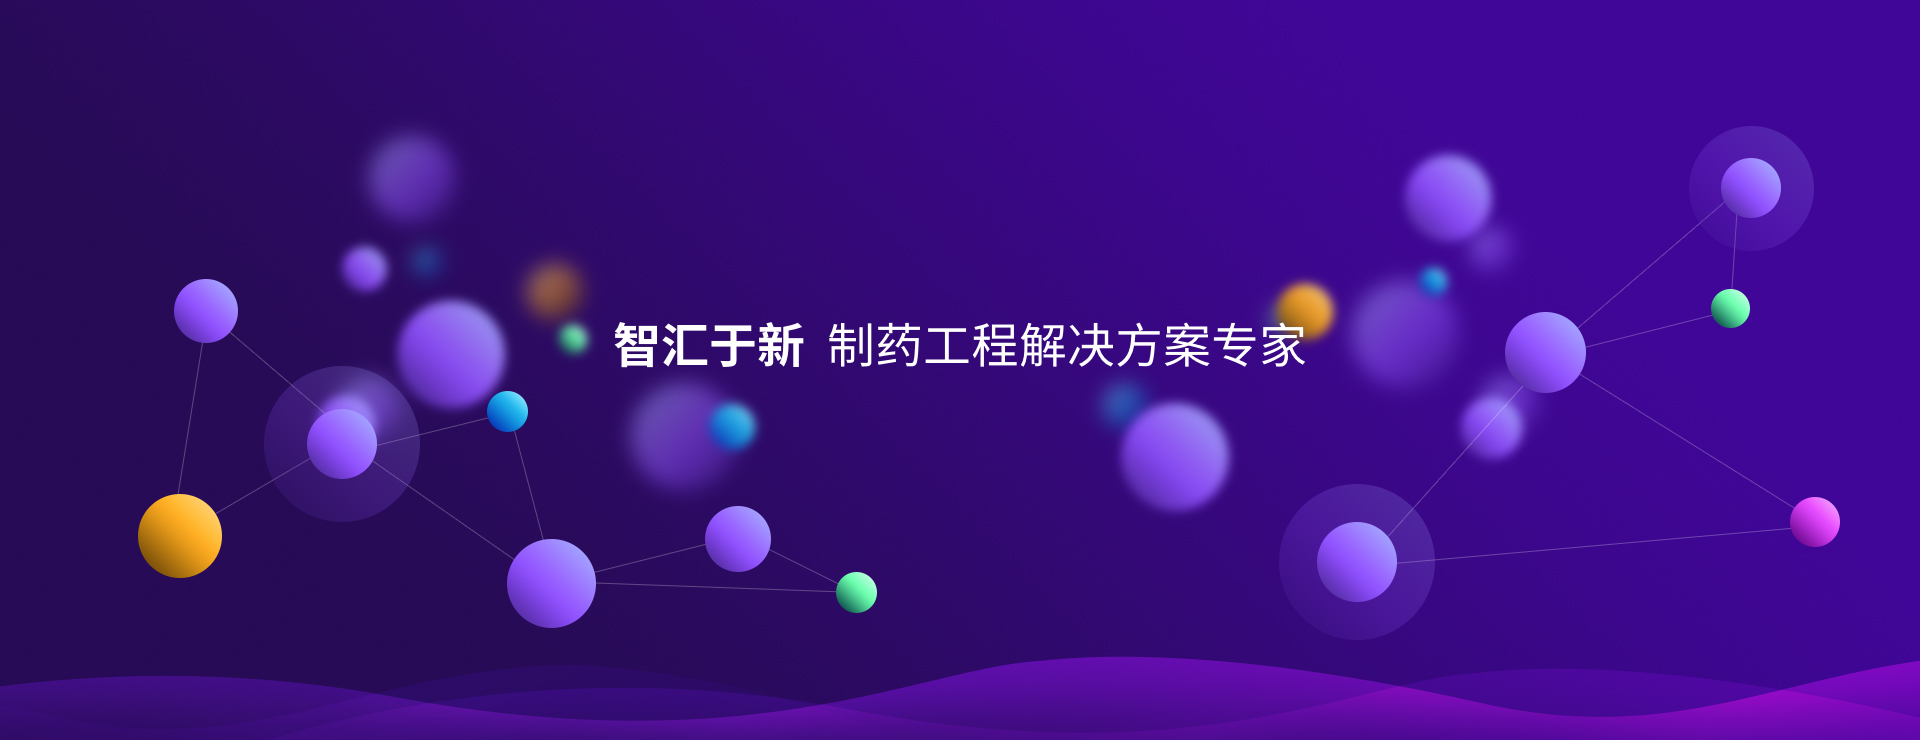 关于当前产品08体育吧·(中国)官方网站的成功案例等相关图片